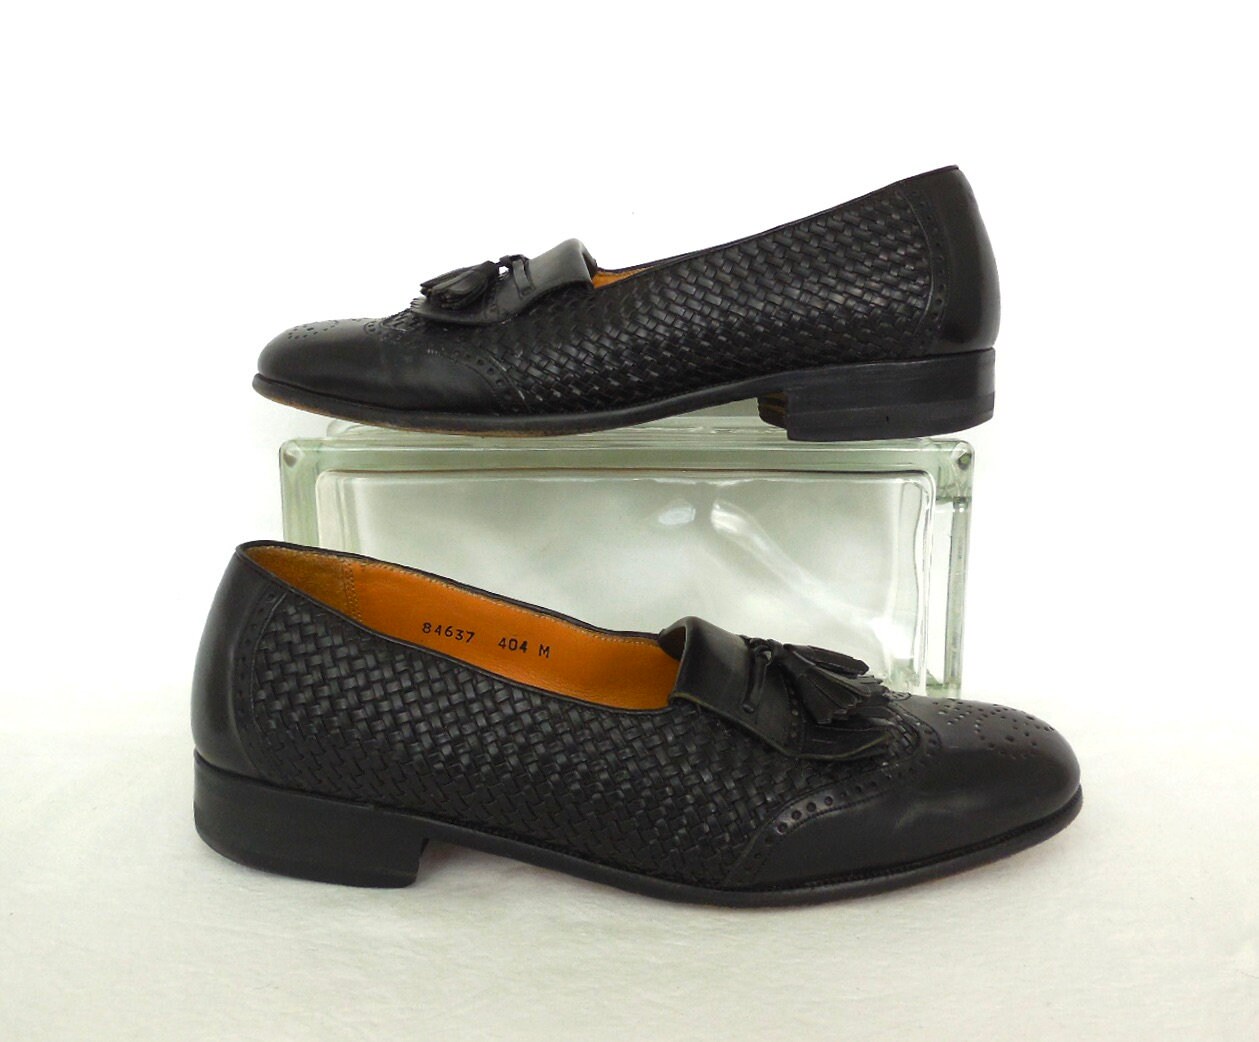 Schoenen damesschoenen Instappers Loafers black leather woven loafers 